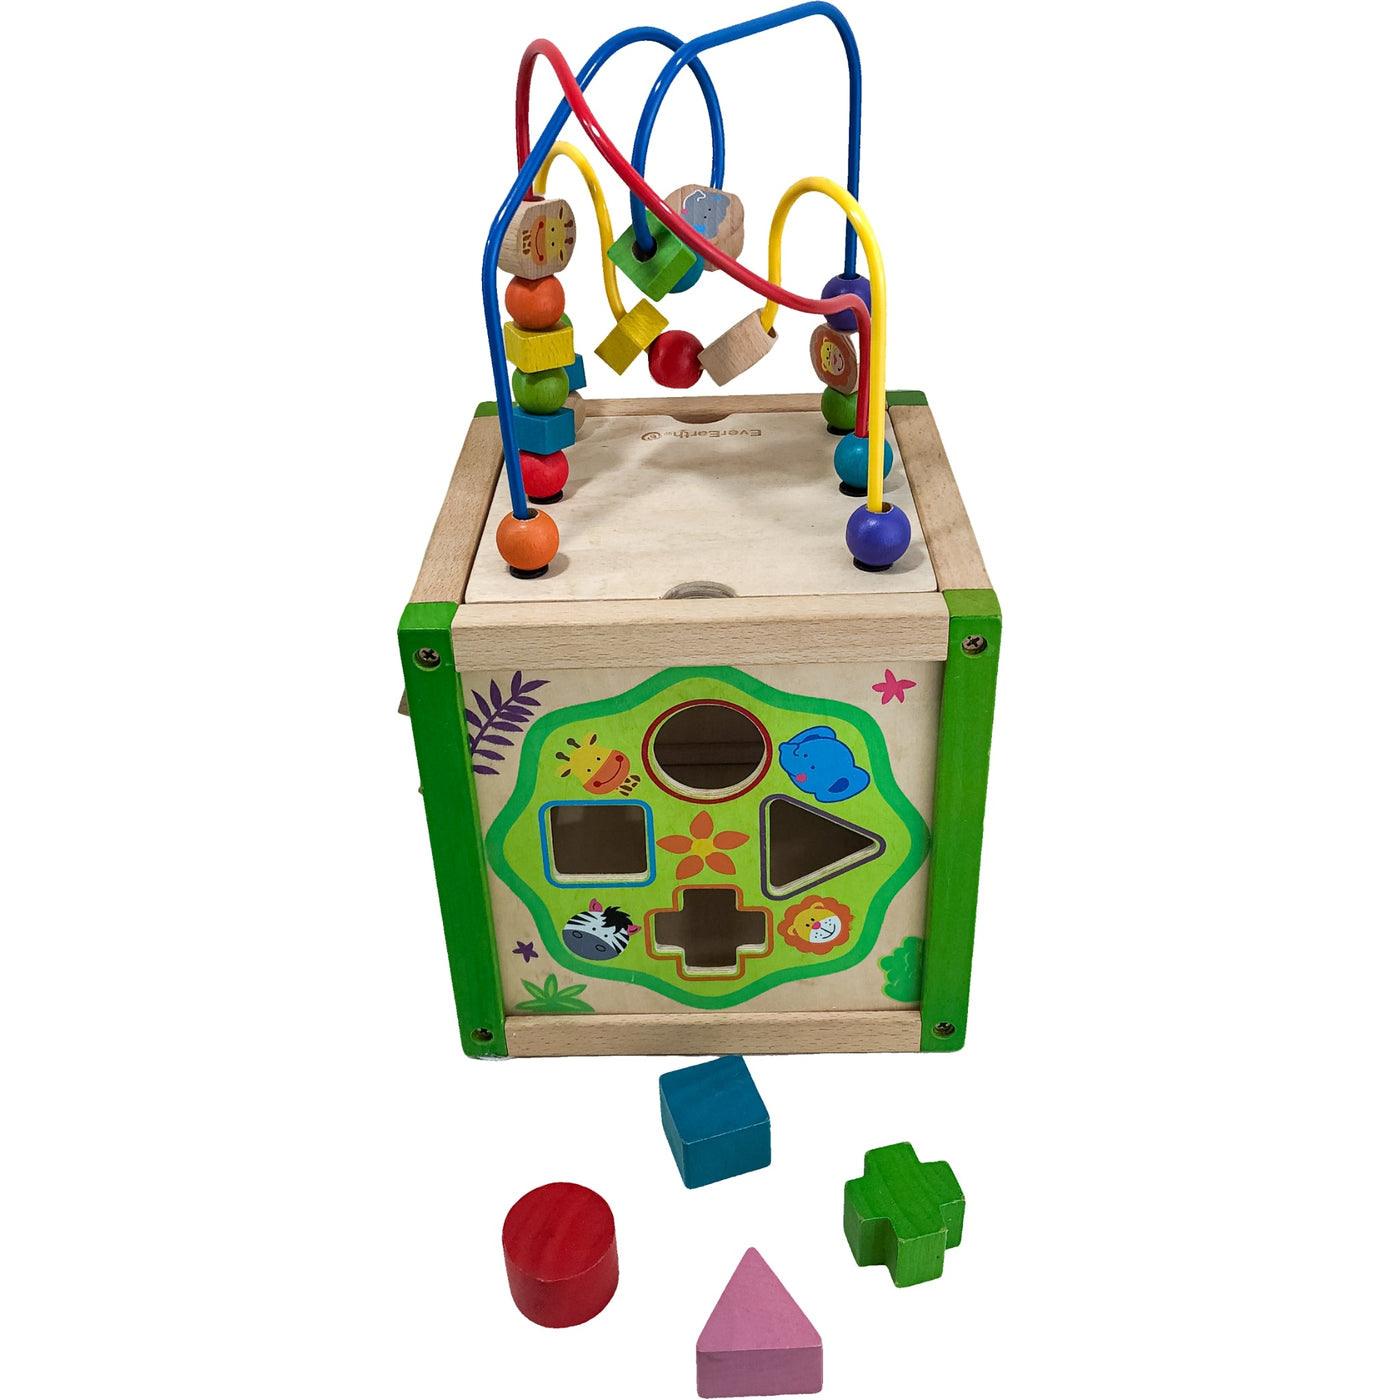 Cube d'activités "Cube d'activités multi-jeux" de seconde main en bois pour enfant à partir de 18 mois - Vue 2